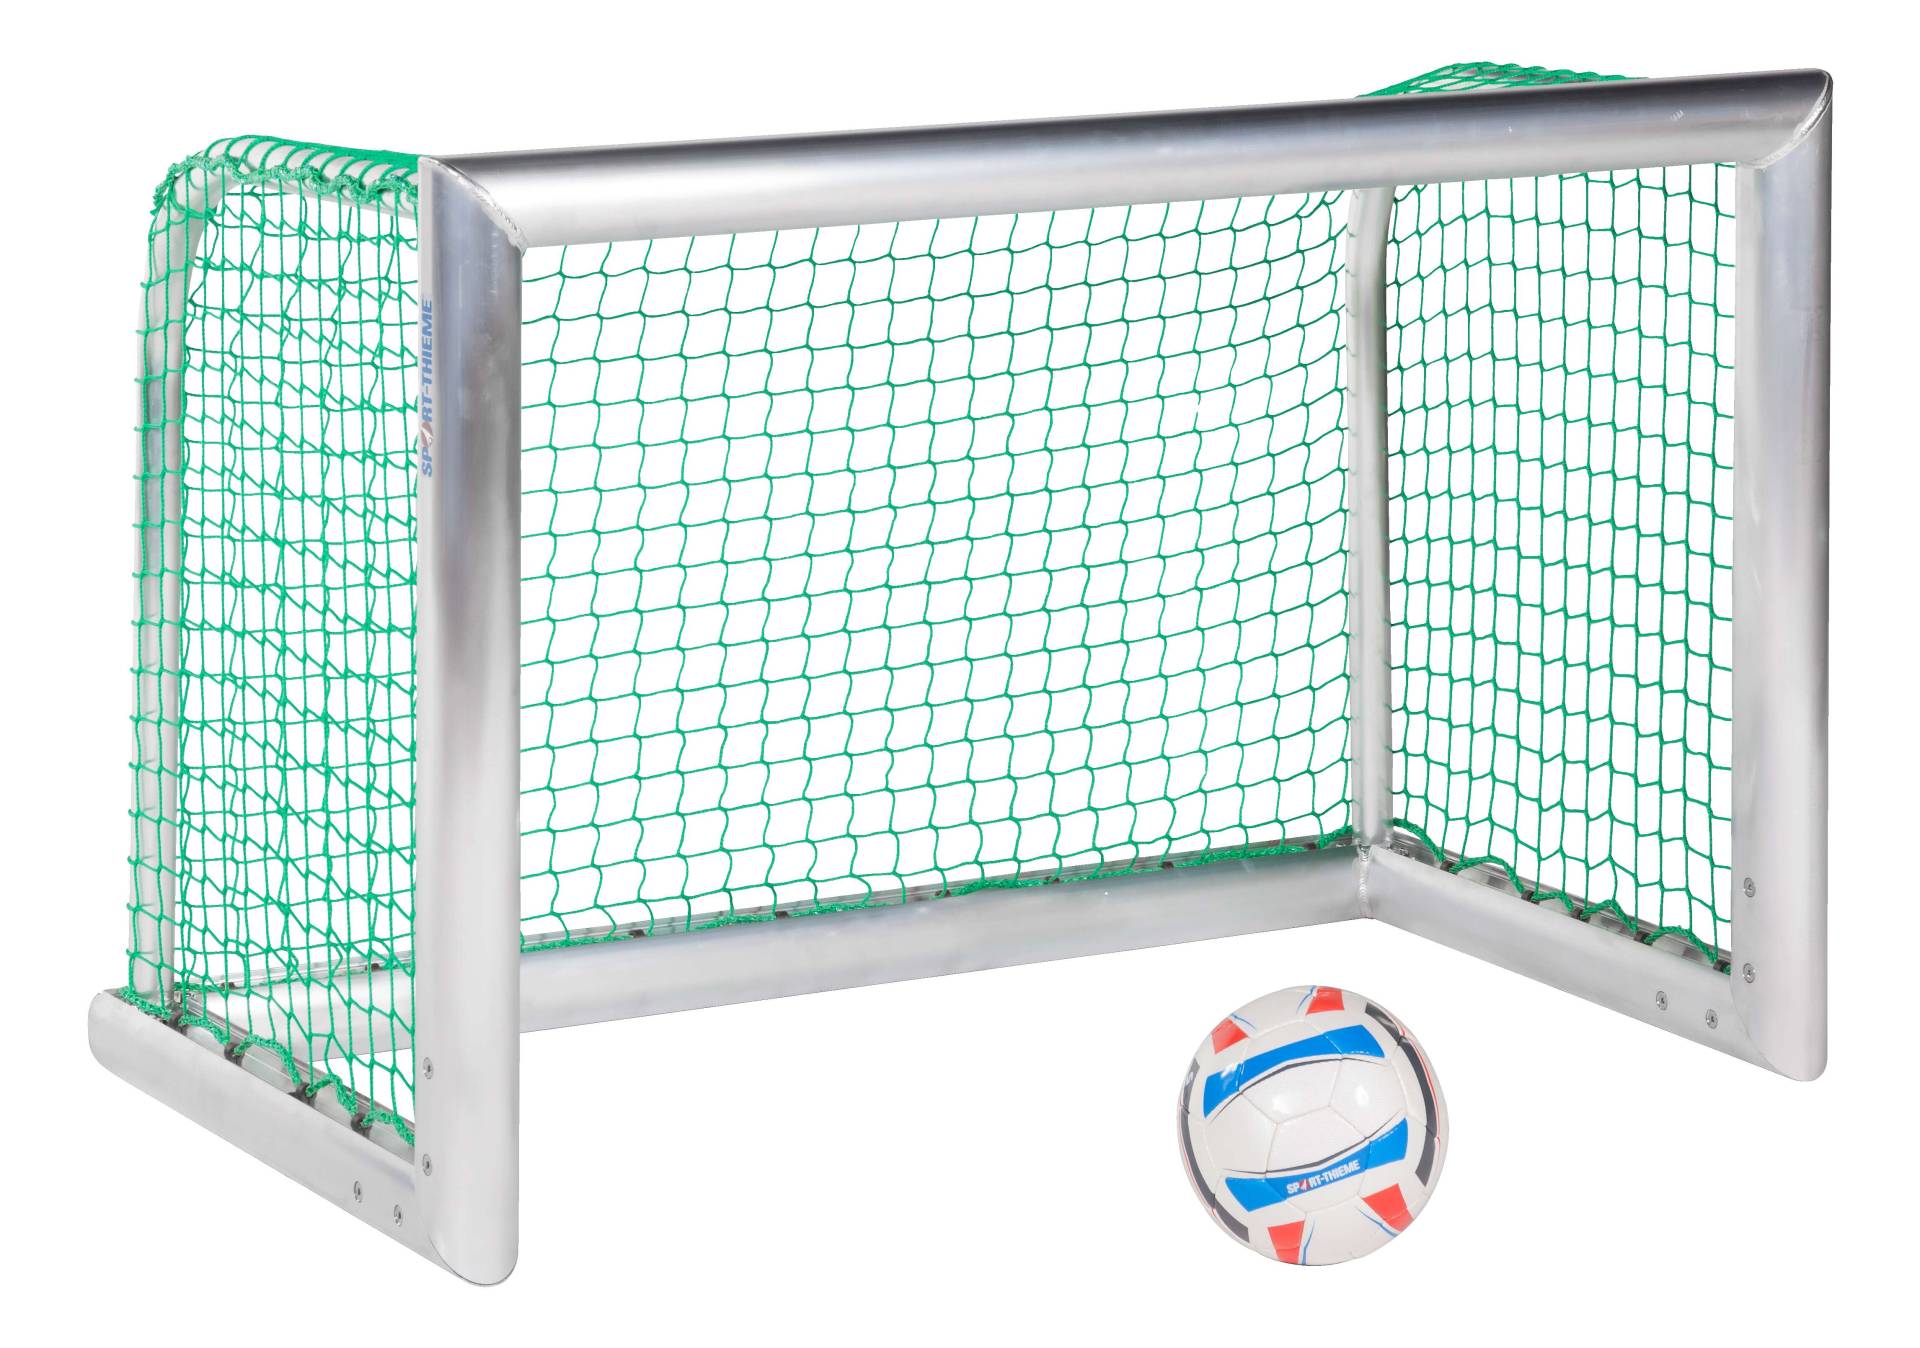 Sport-Thieme Mini-Fußballtor "Professional Kompakt", Alu-Naturblank, Inkl. Netz, grün (MW 4,5 cm), 1,20x0,80 m von Sport-Thieme